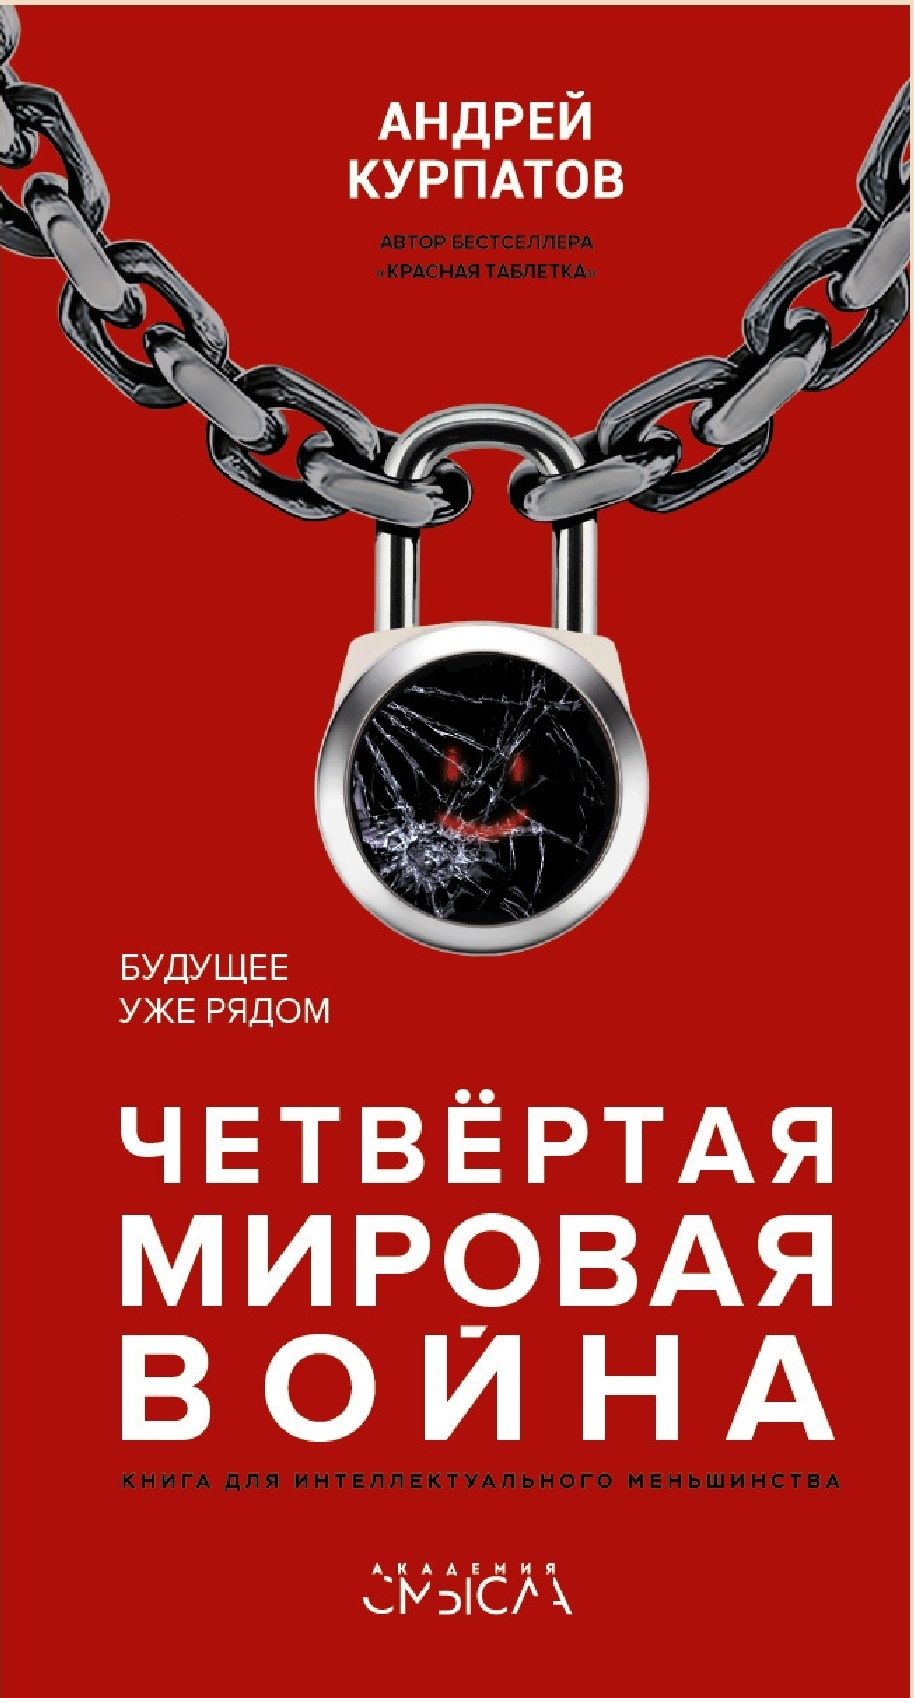 Книги Андрей Владимирович Курпатов книги в электронном виде